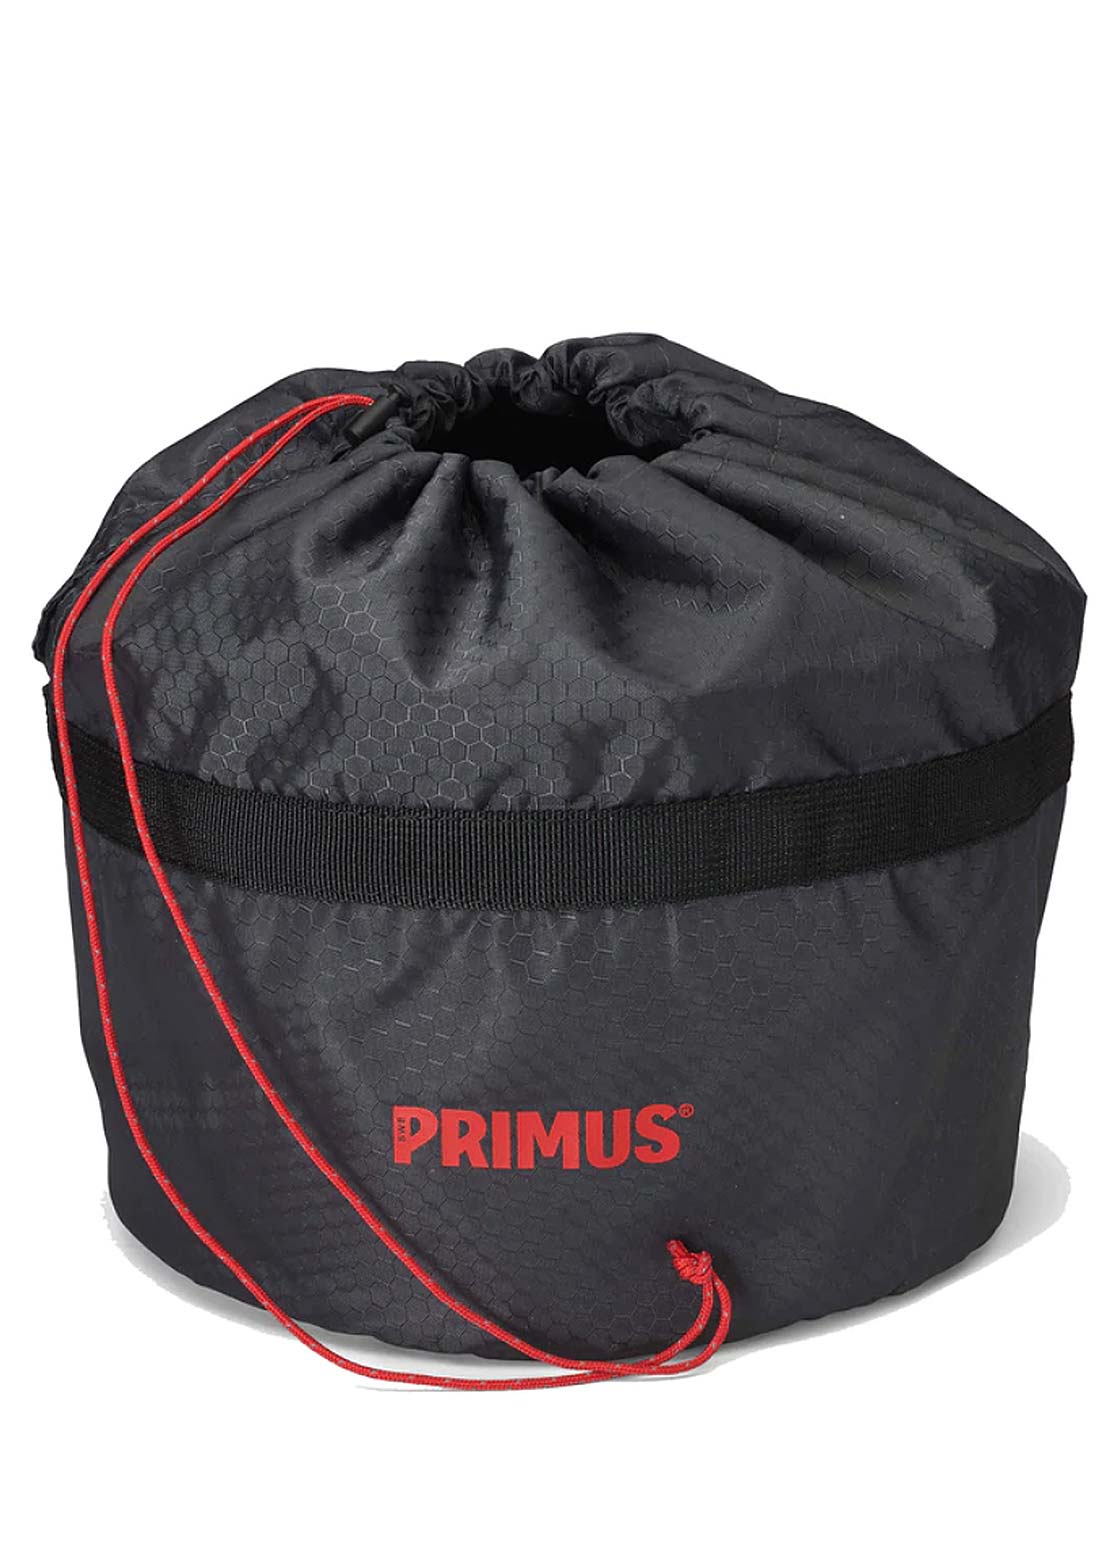 Primus Primetech 2.3L Stove System